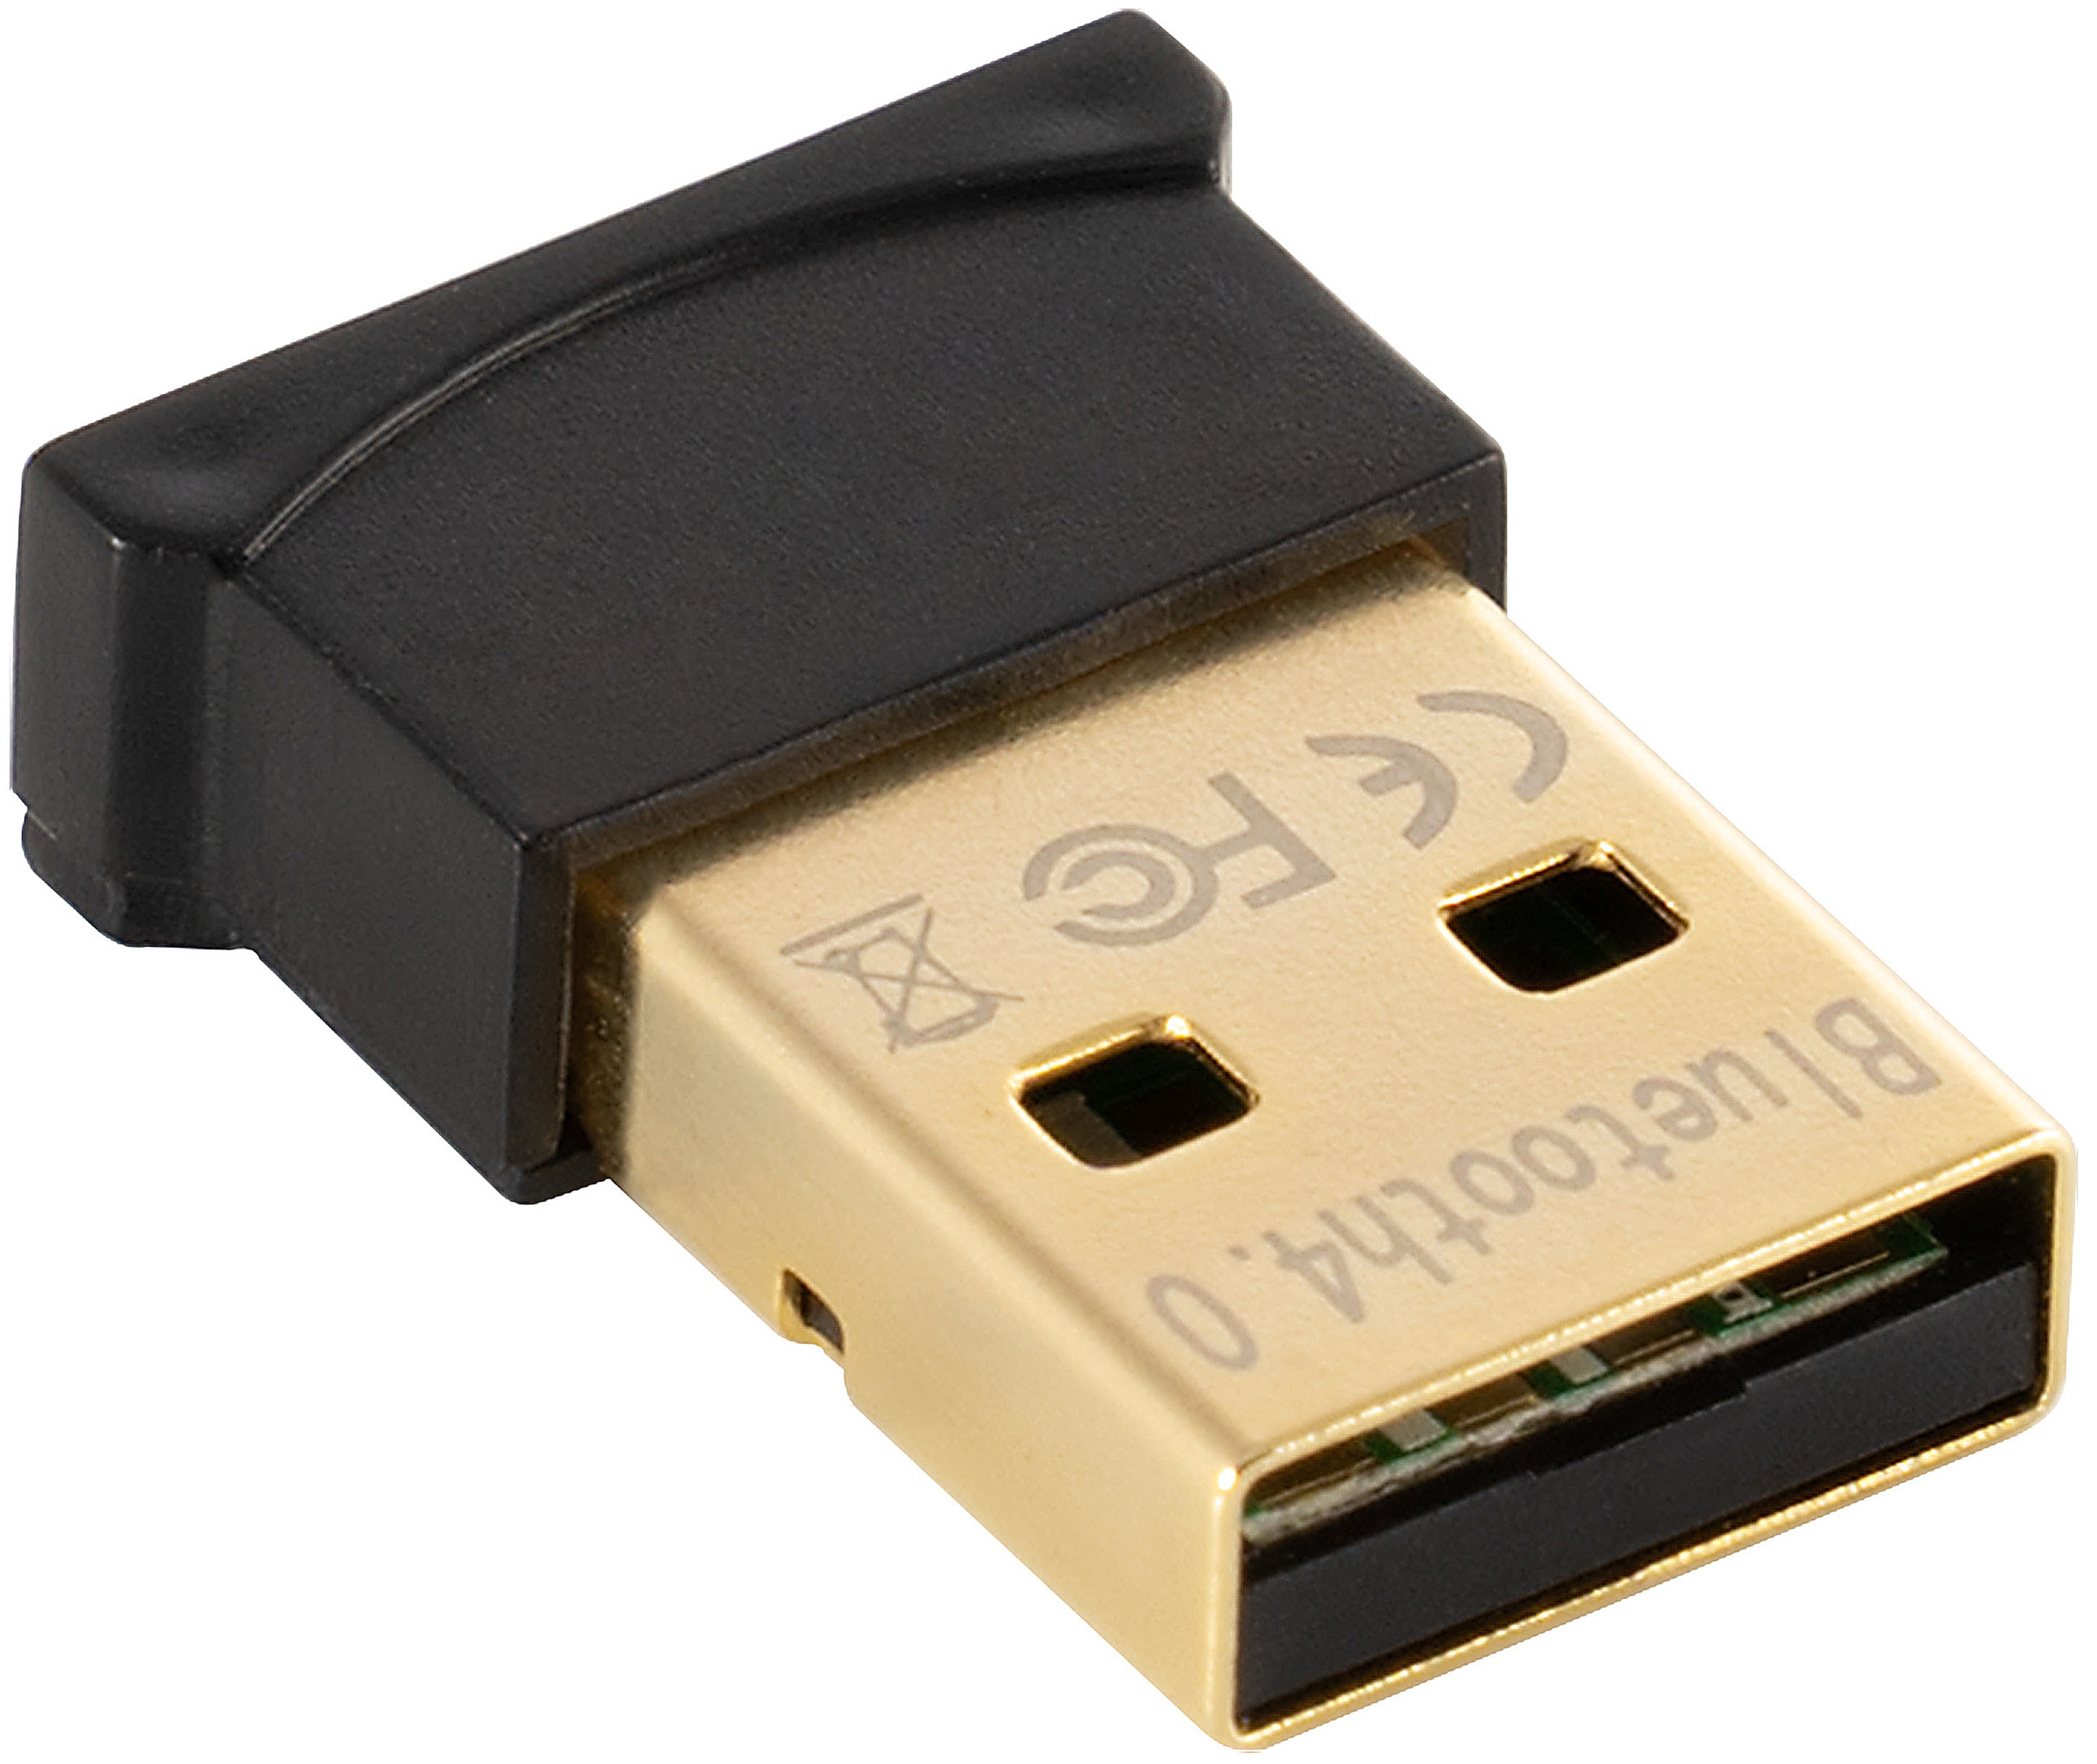 USB Dongle Bluetooth Adapter 4.0, 1 Stück, schwarz